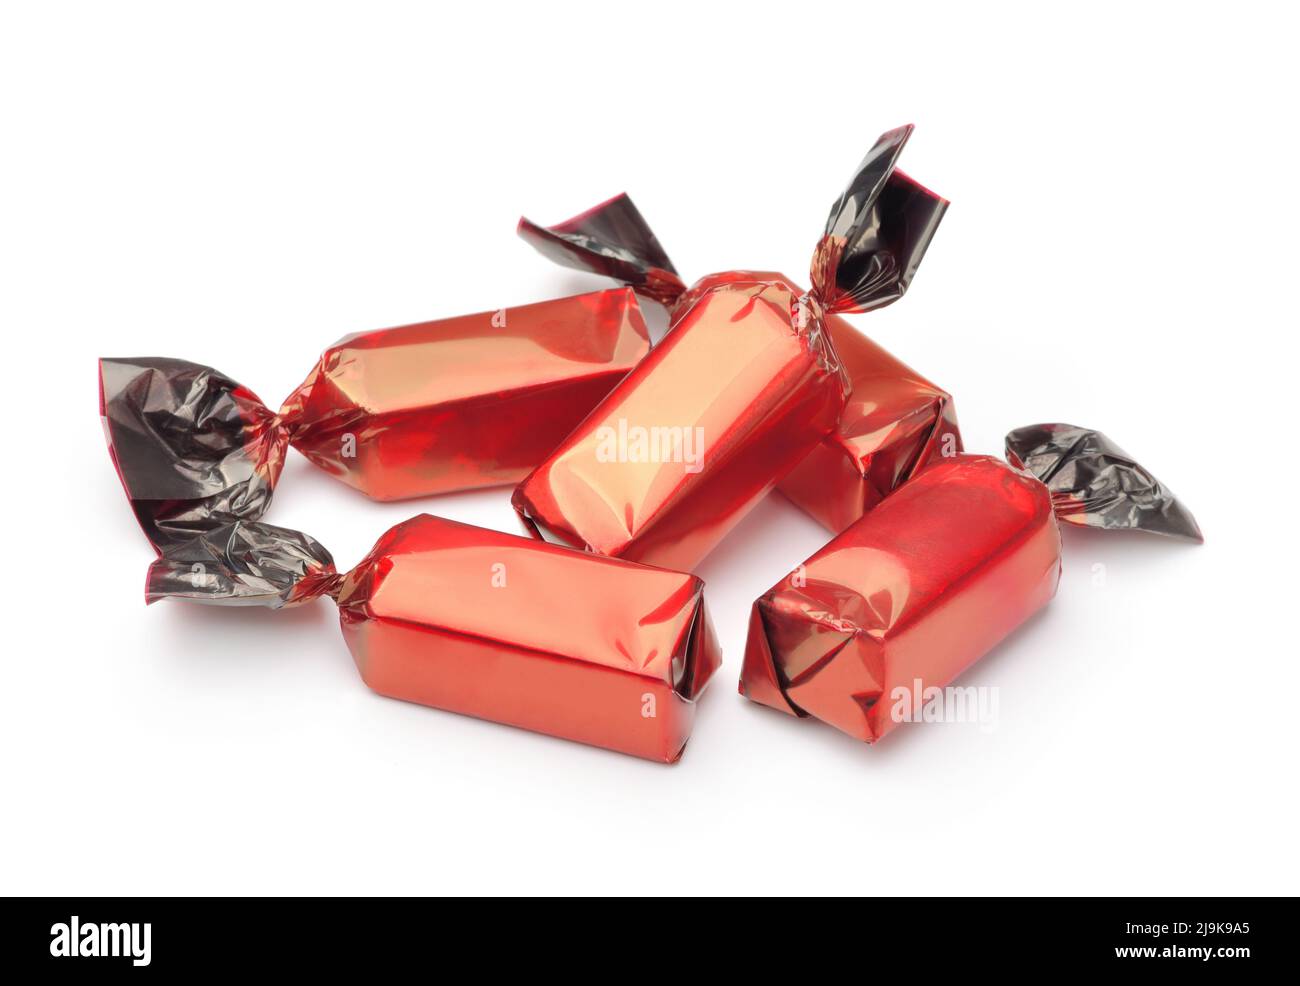 Gruppo di caramelle al cioccolato avvolte in involucri rossi isolati su bianco Foto Stock